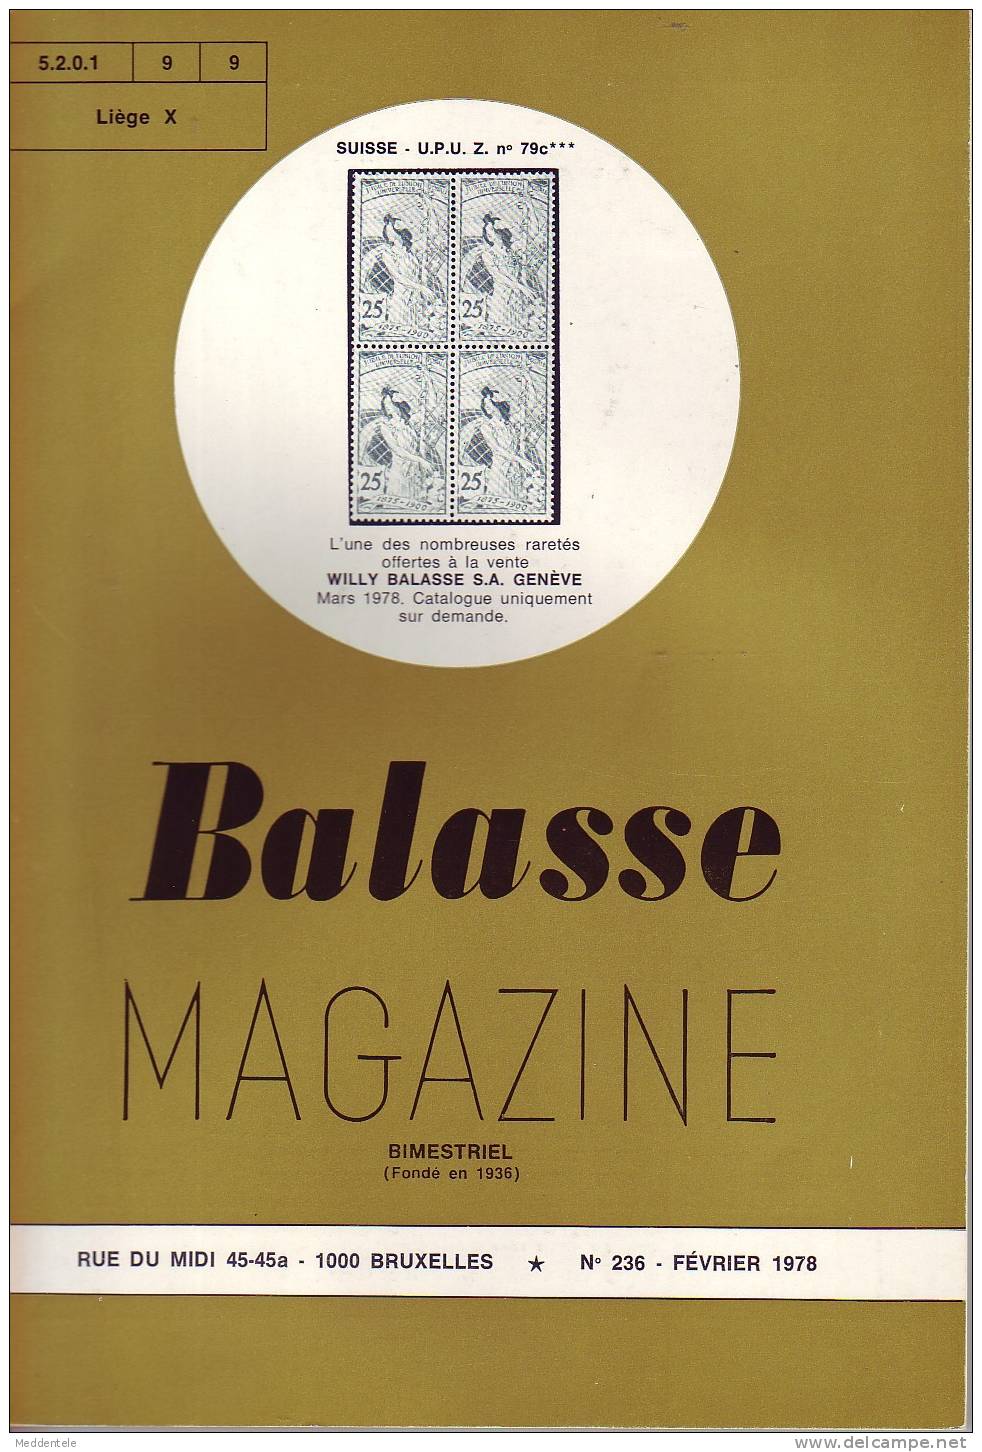 BALASSE MAGAZINE N° 236 - Französisch (ab 1941)